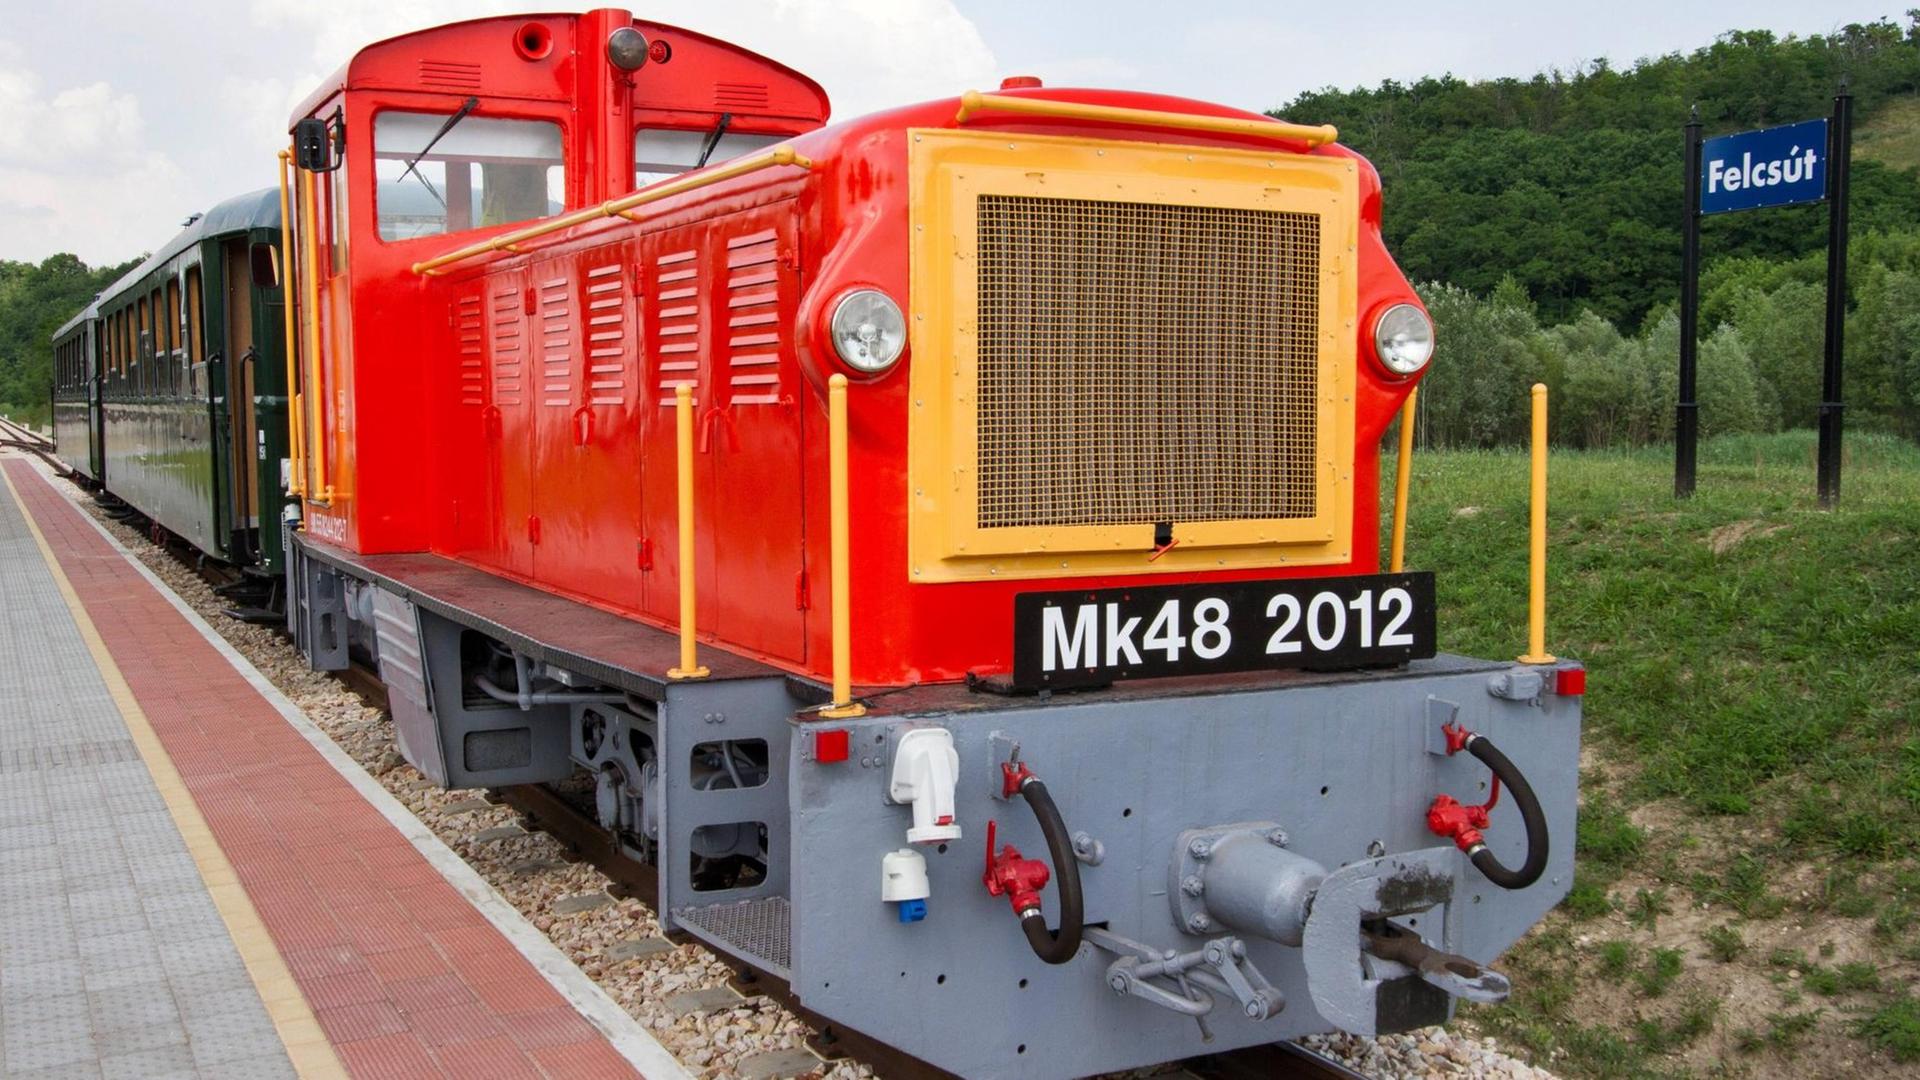 Die von einer roten Lokomotive gezogene Schmalspurbahn am Bahnhof steht am Bahnhof von Felcsút in Ungarn.